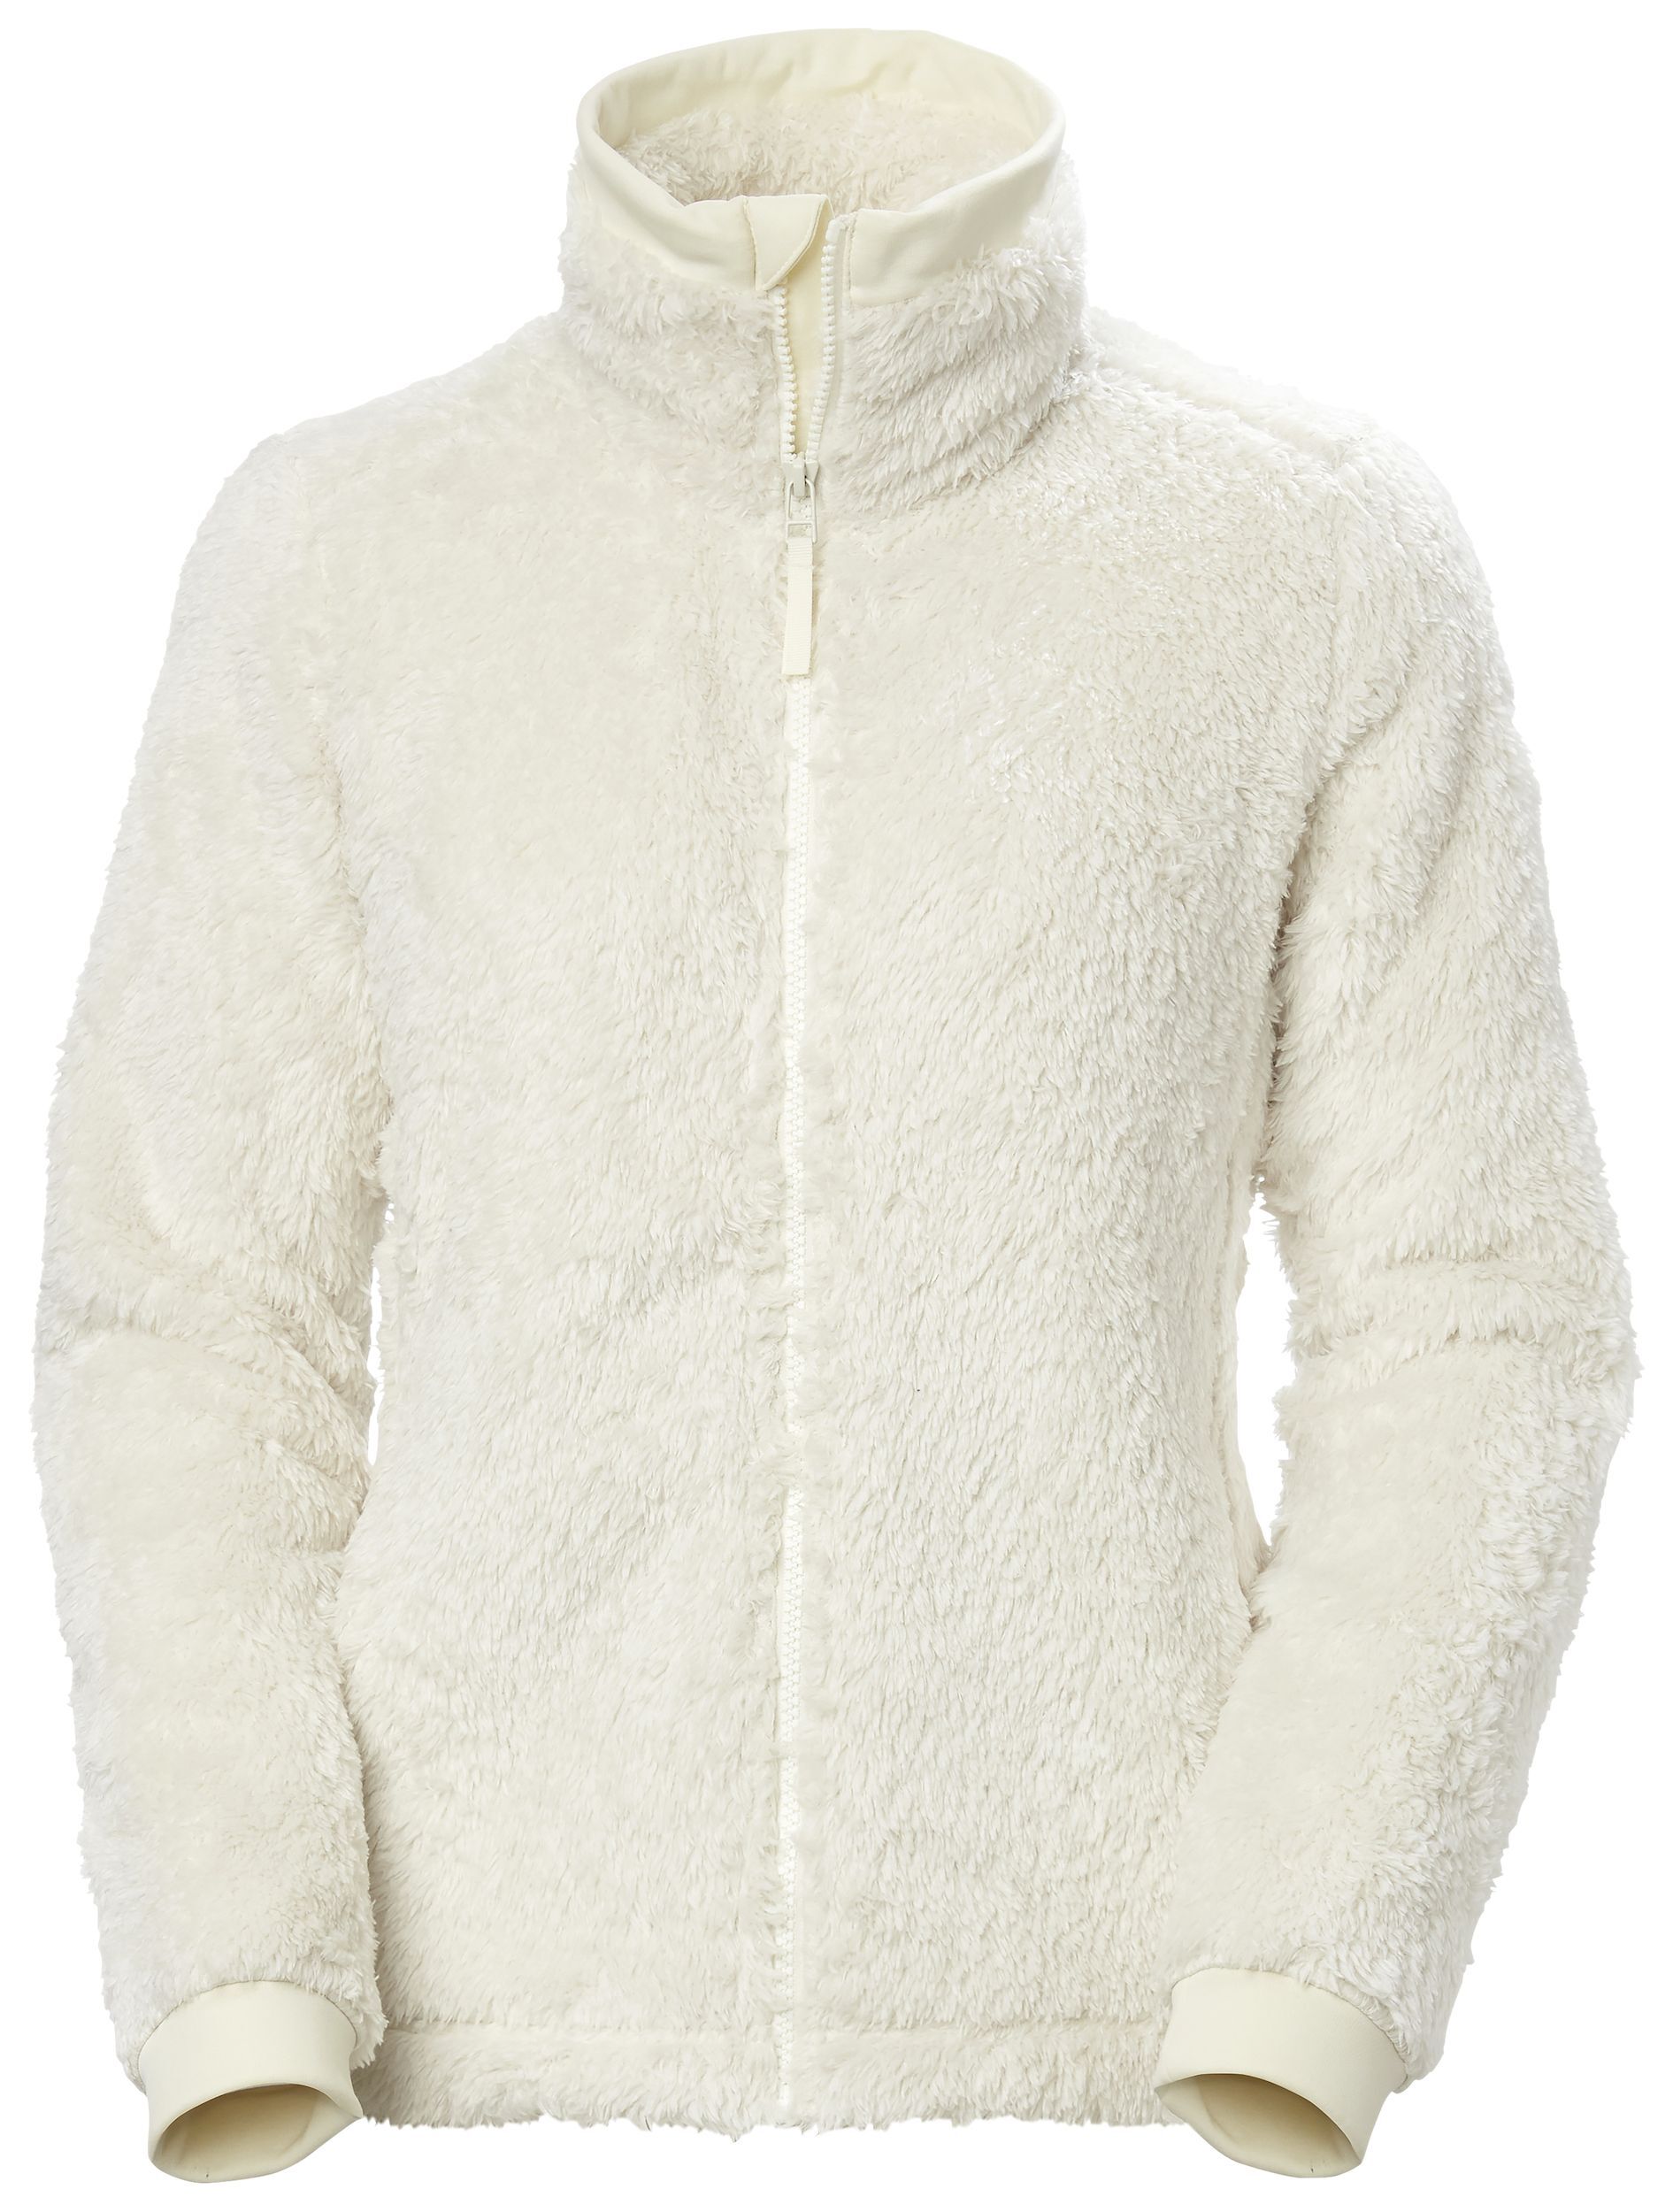 Helly Hansen Precious Fleece Jacket 2.0 - Polaire femme